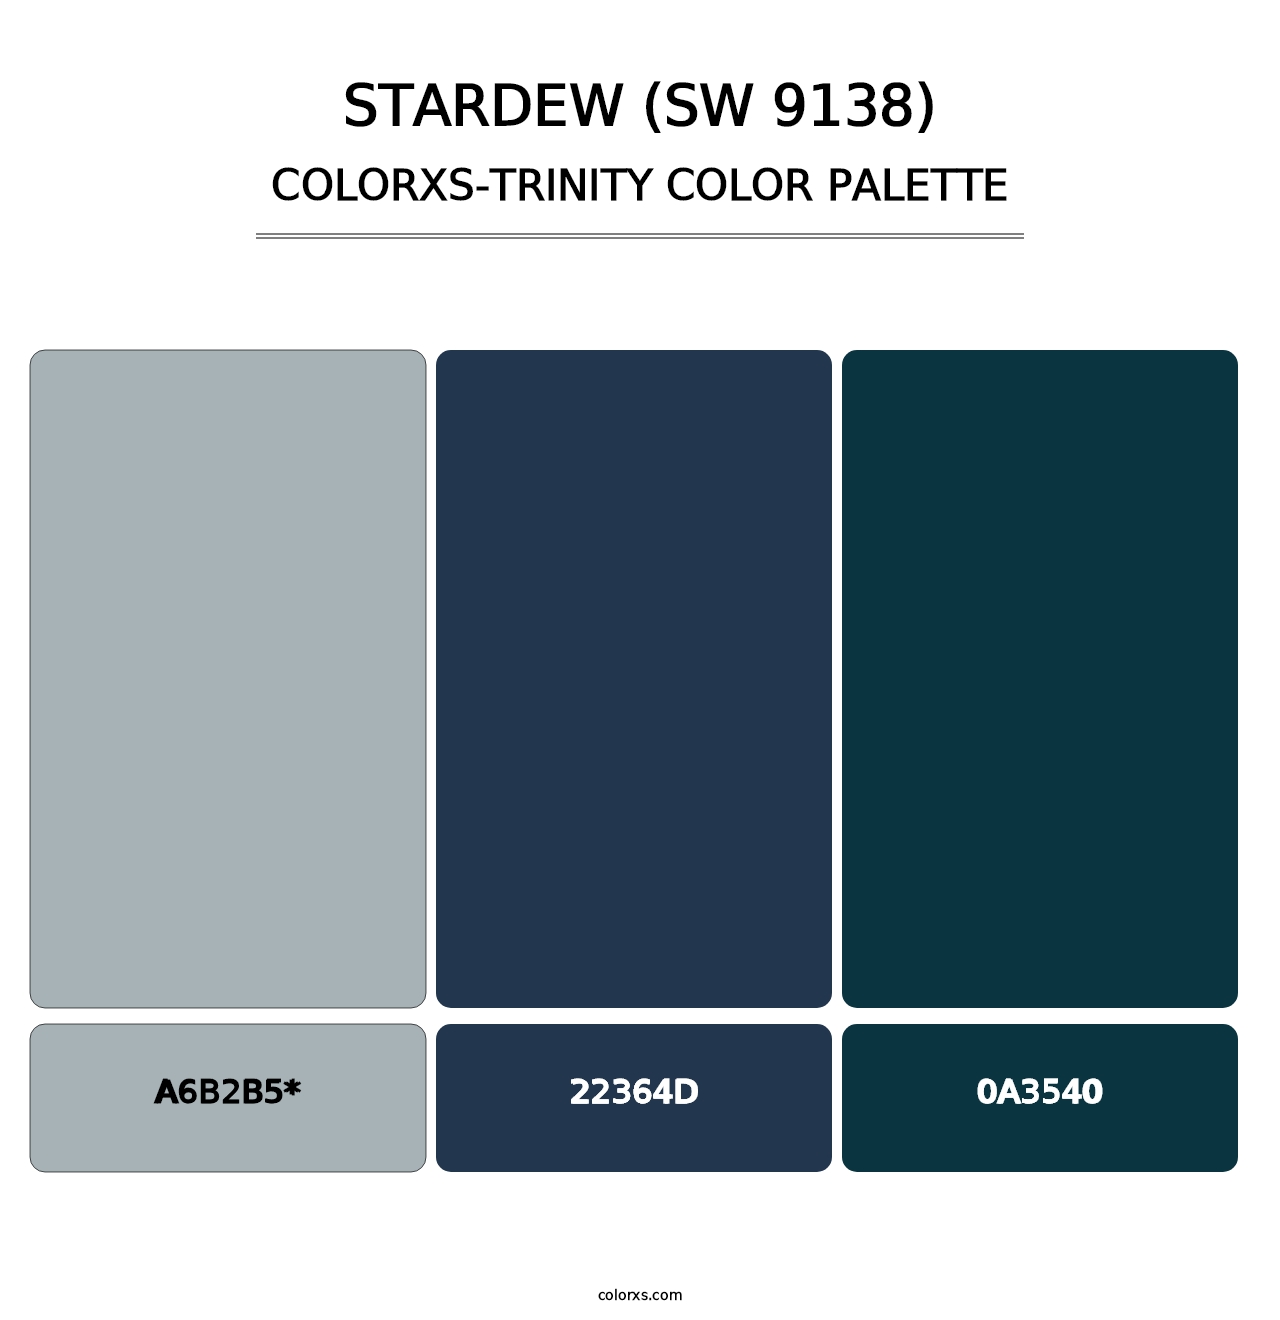 Stardew (SW 9138) - Colorxs Trinity Palette